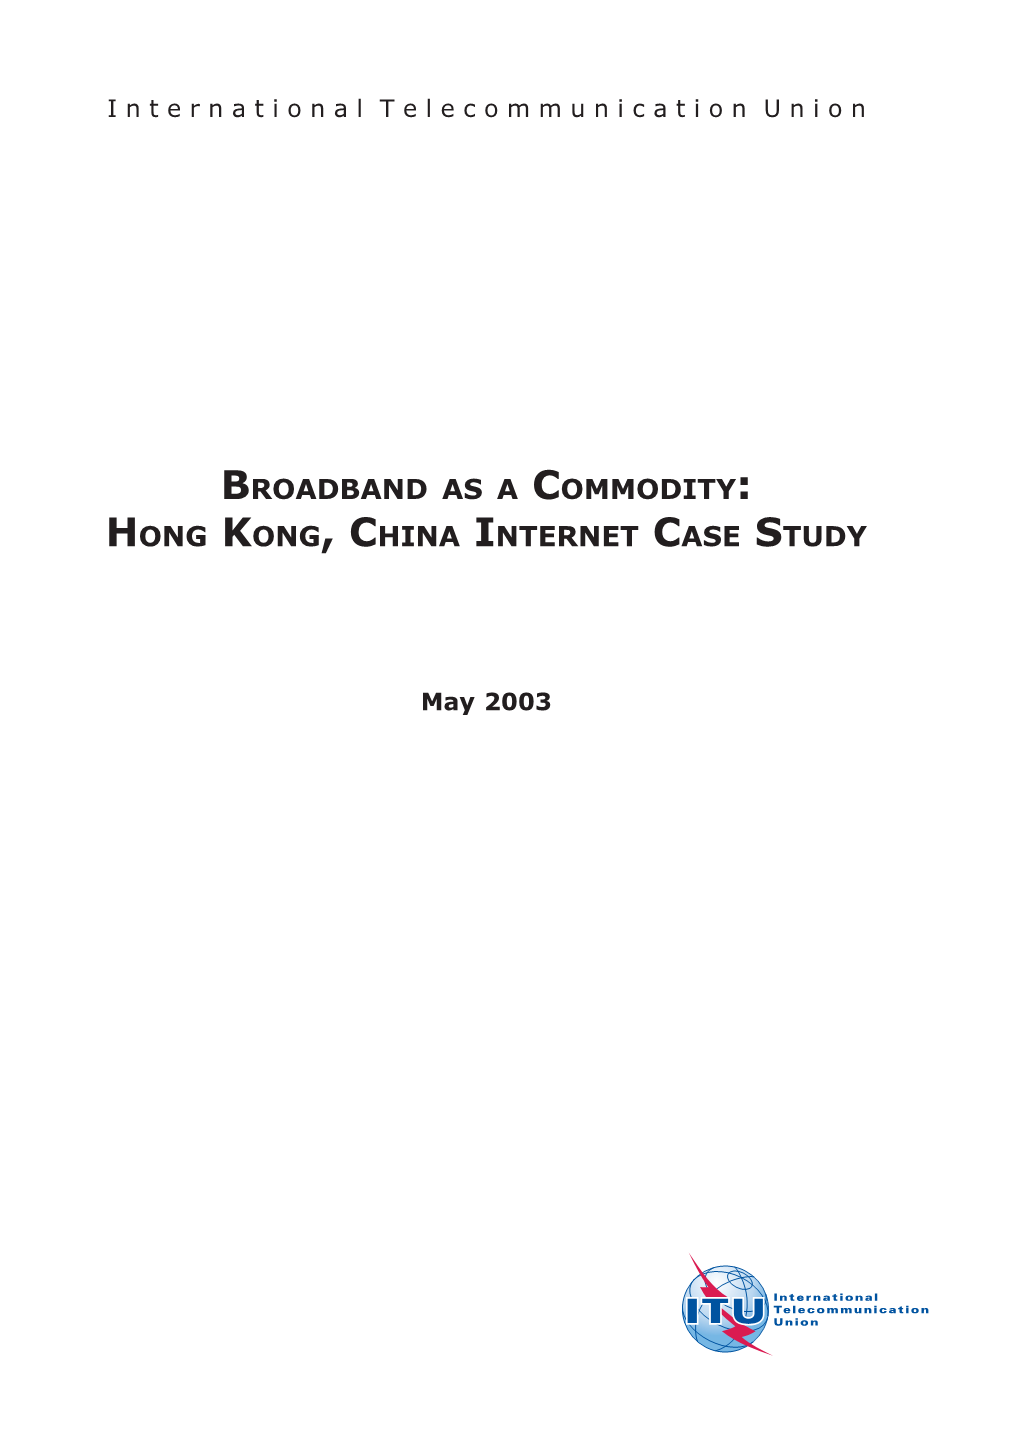 Hong Kong, China Internet Case Study